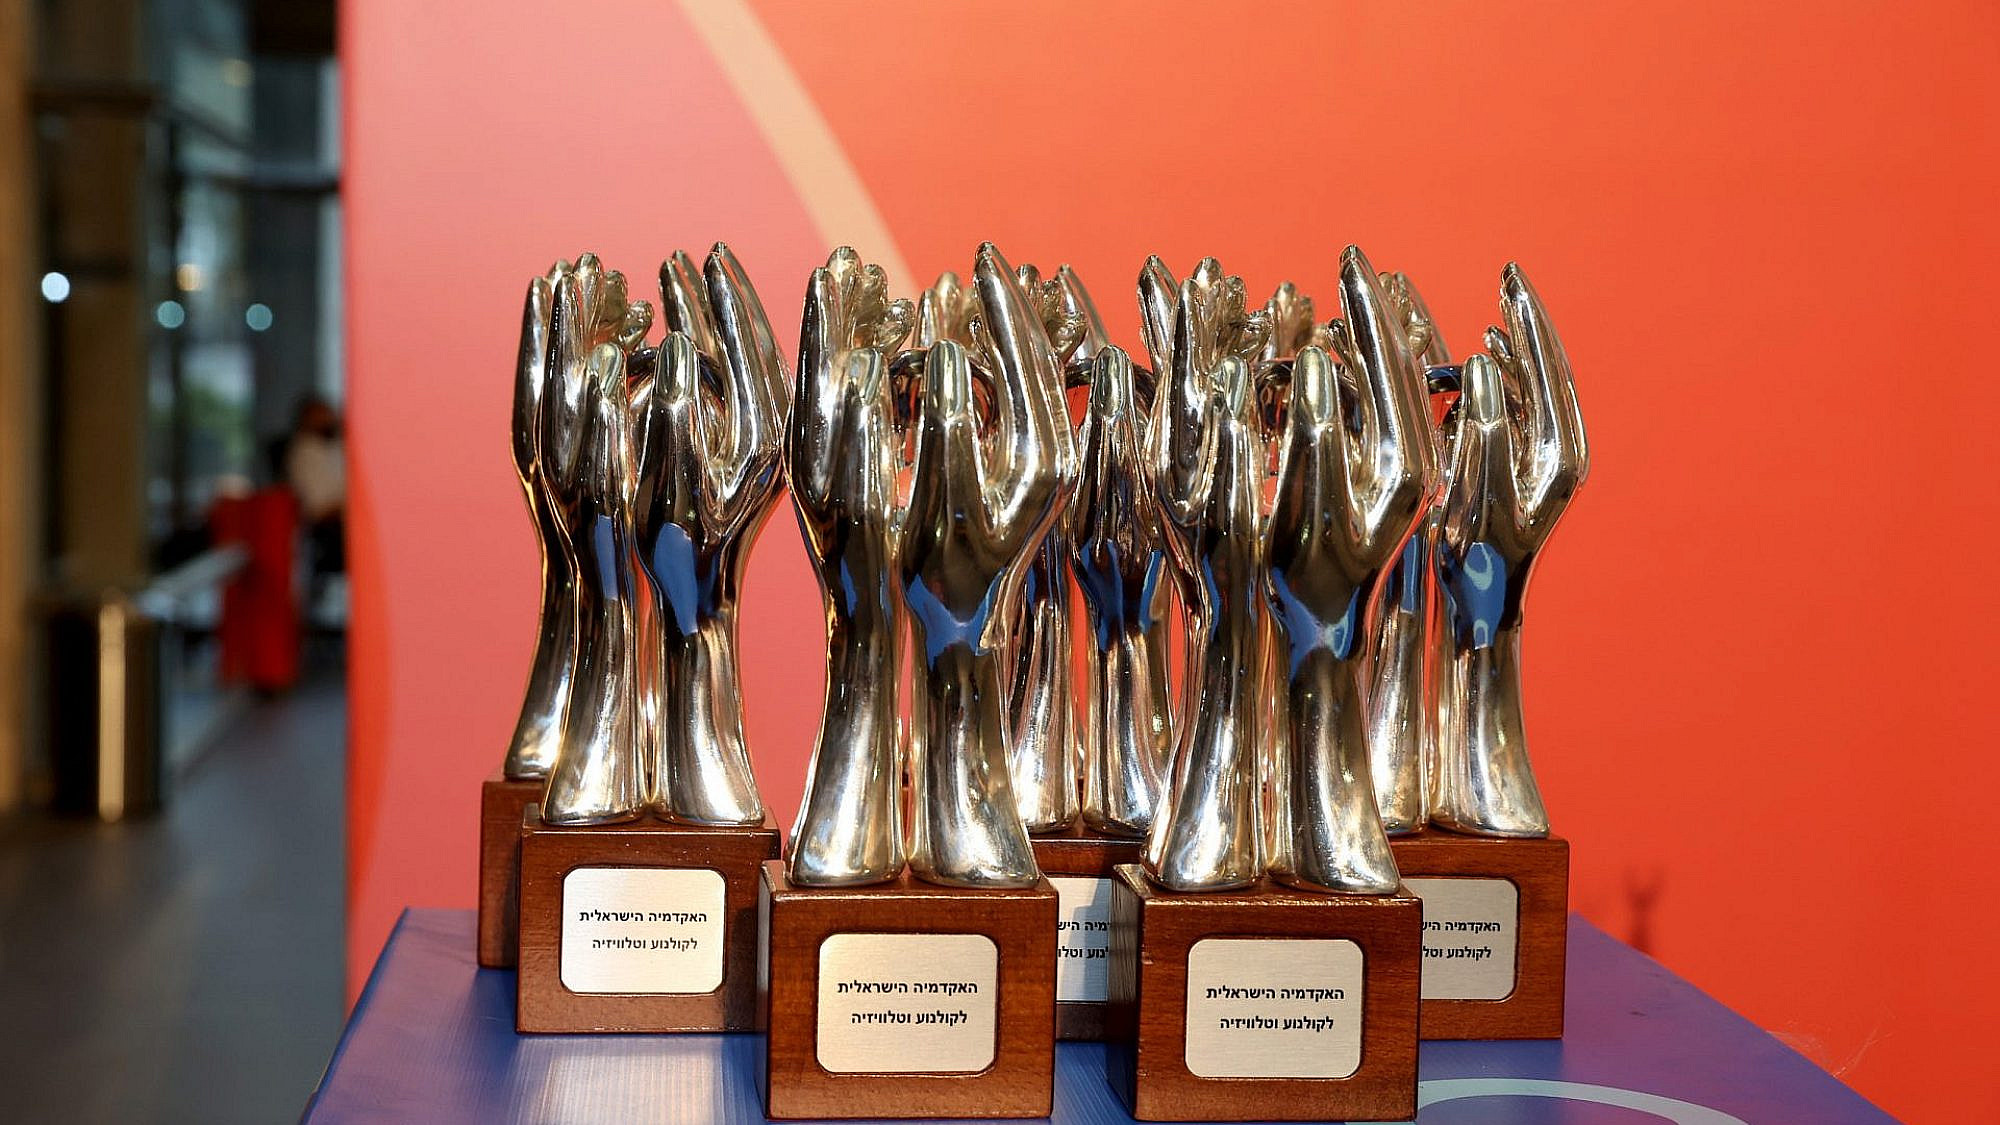 פרסי האקדמיה לטלוויזיה (צילום: איציק בירן/באדיבות האקדמיה לטלוויזיה וקולנוע)